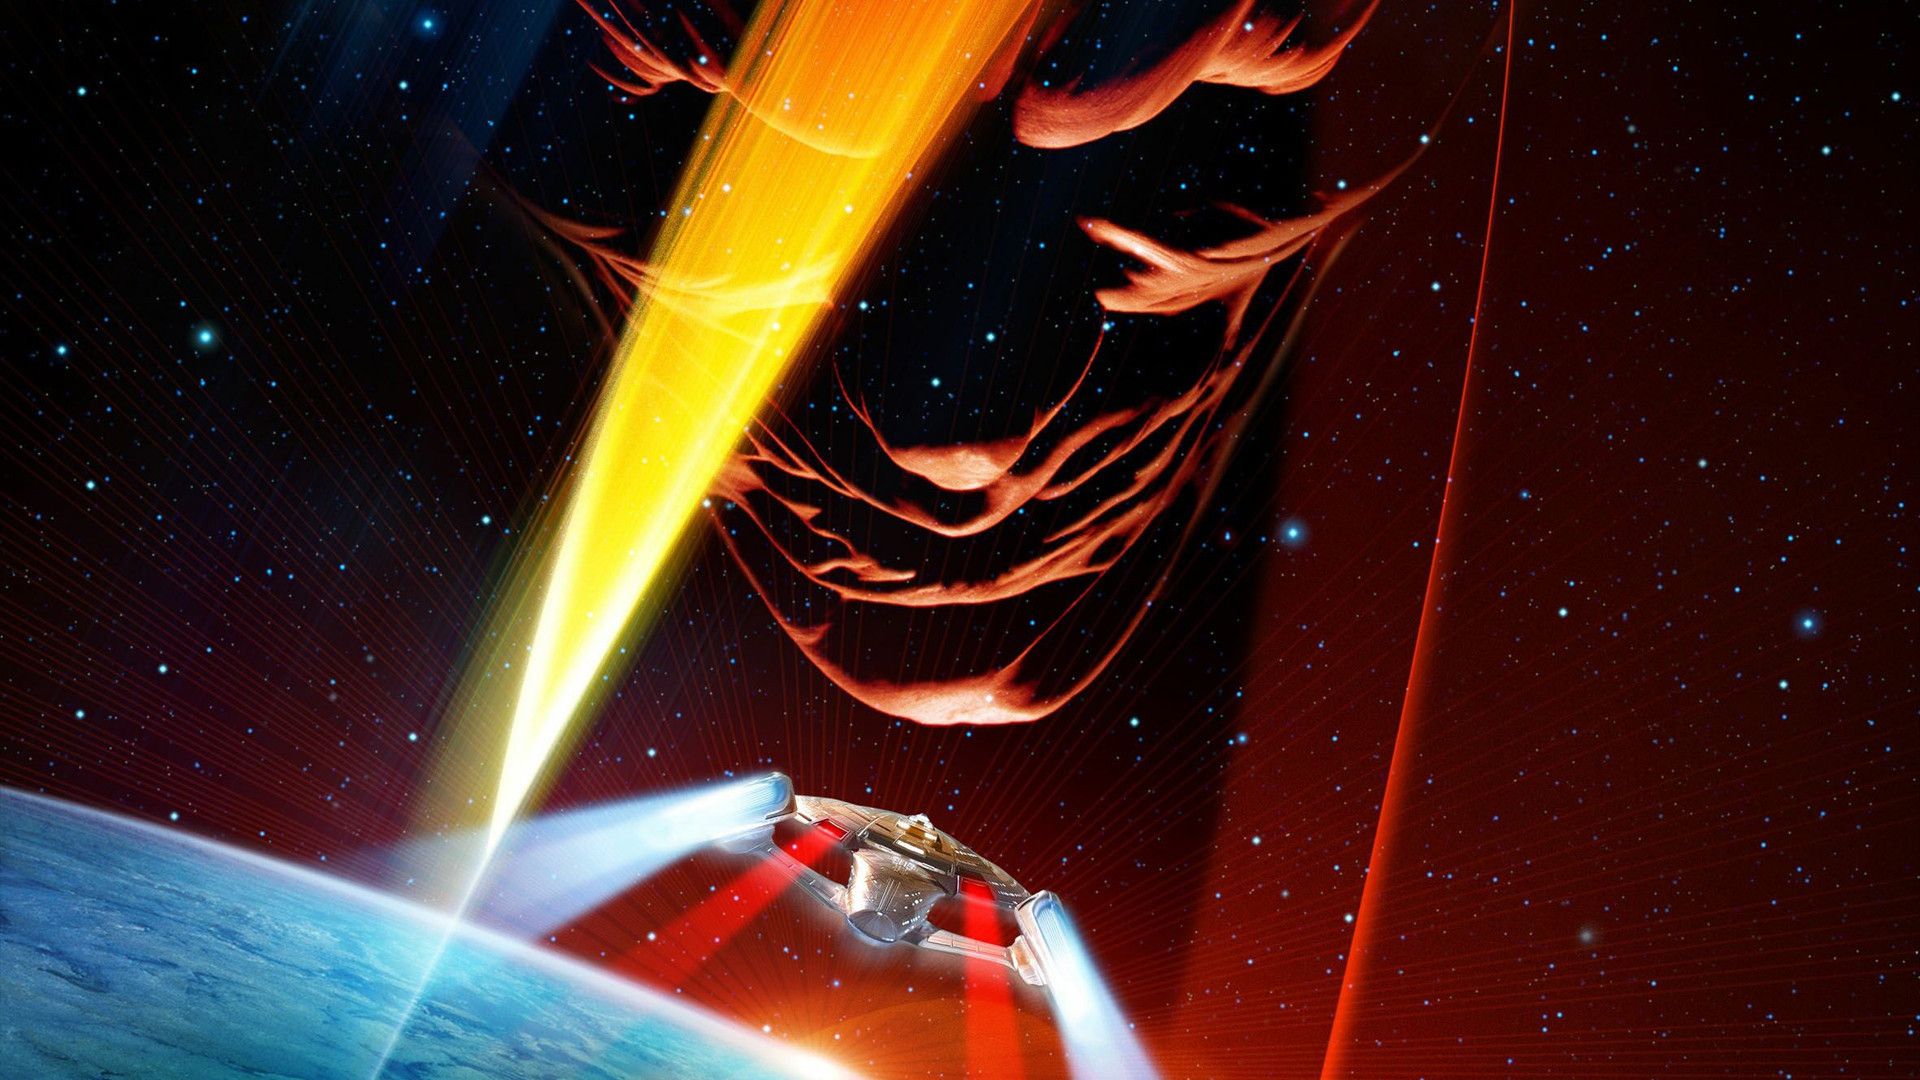 Star Trek: Insurrection background